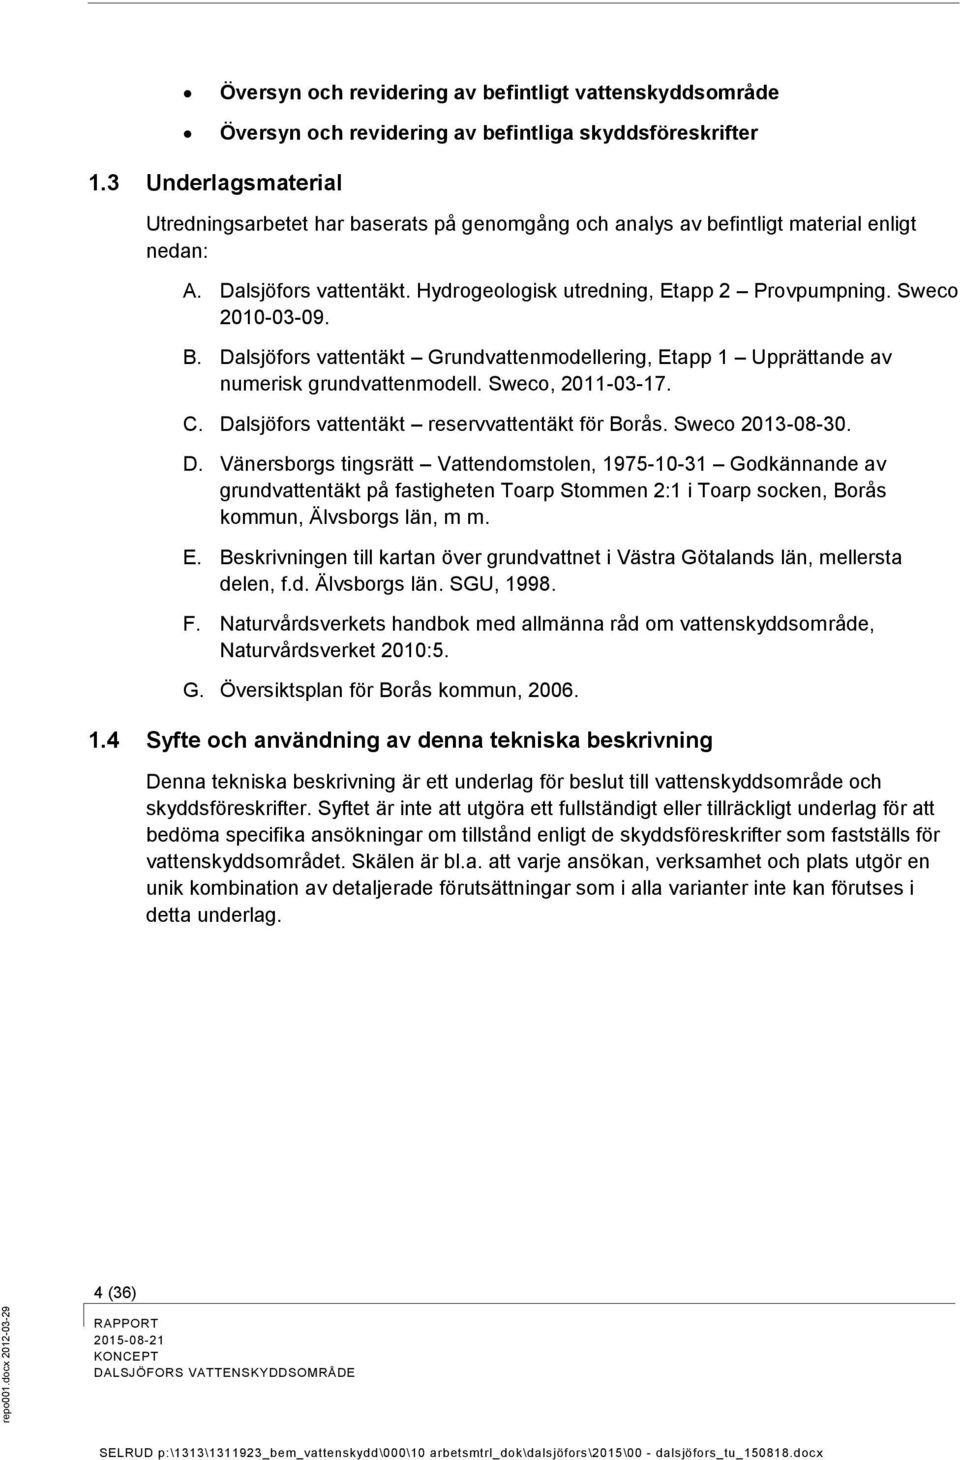 Dalsjöfrs vattentäkt Grundvattenmdellering, Etapp 1 Upprättande av numerisk grundvattenmdell. Swec, 2011-03-17. C. Da